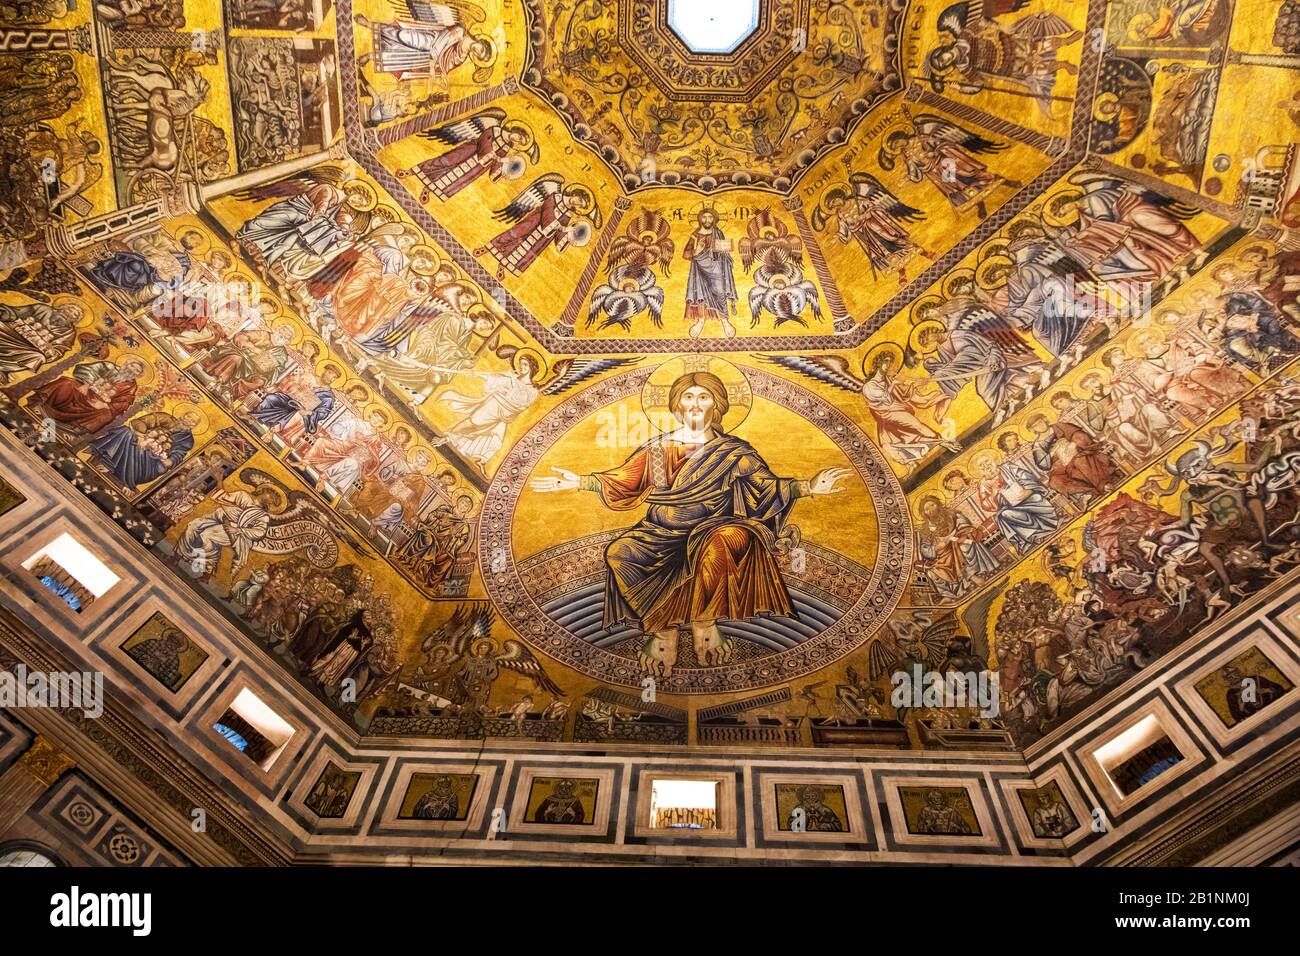 Le dôme du Baptistère de Florence Italie Banque D'Images